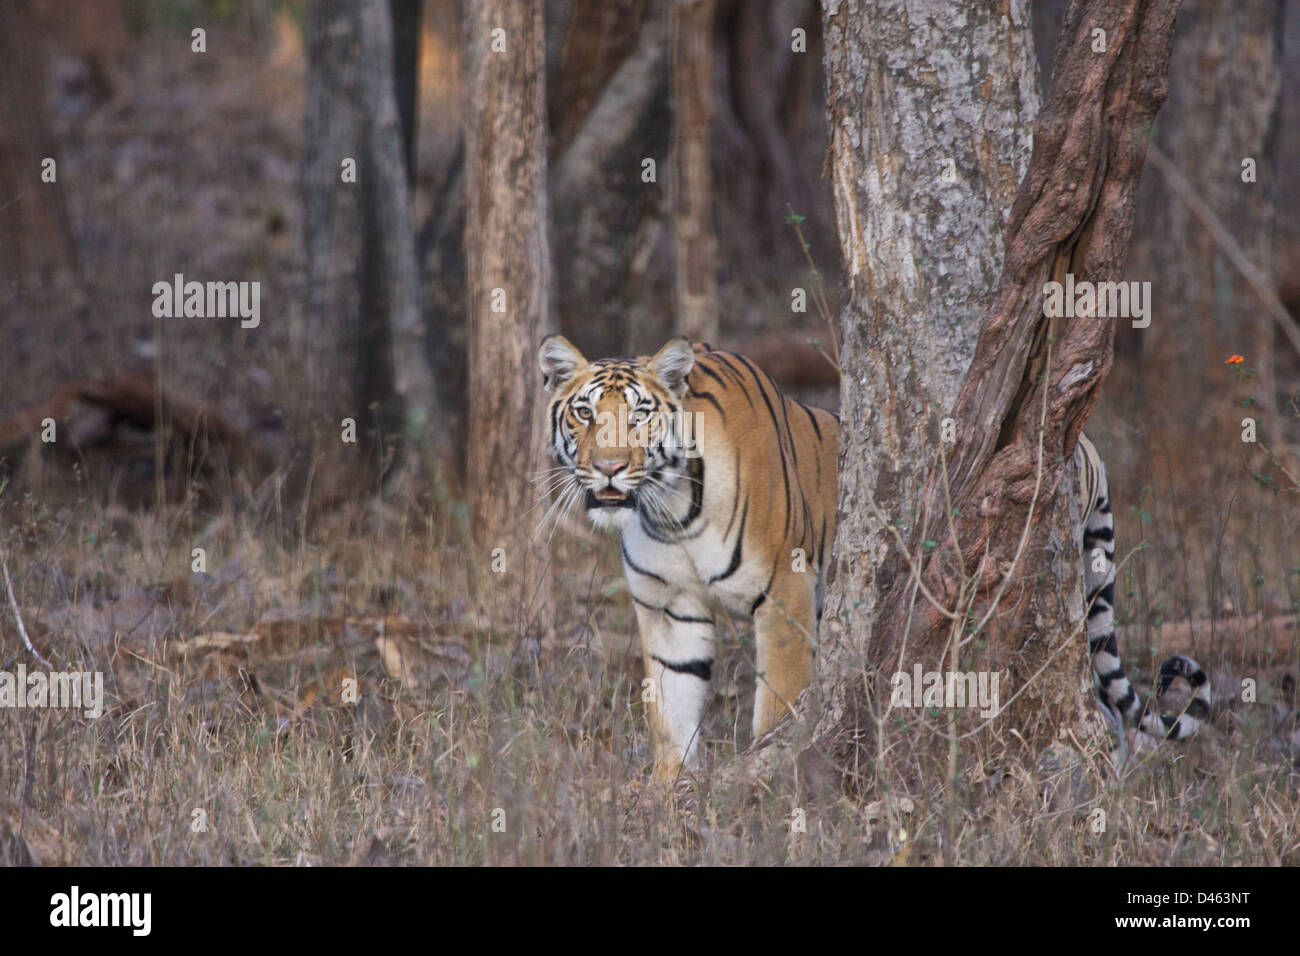 A Tigress encounter Stock Photo